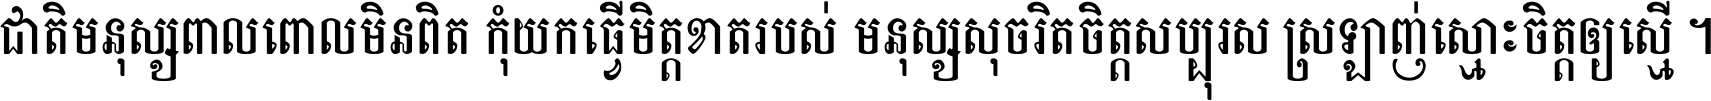 Angkor Sovann Fantasy_03